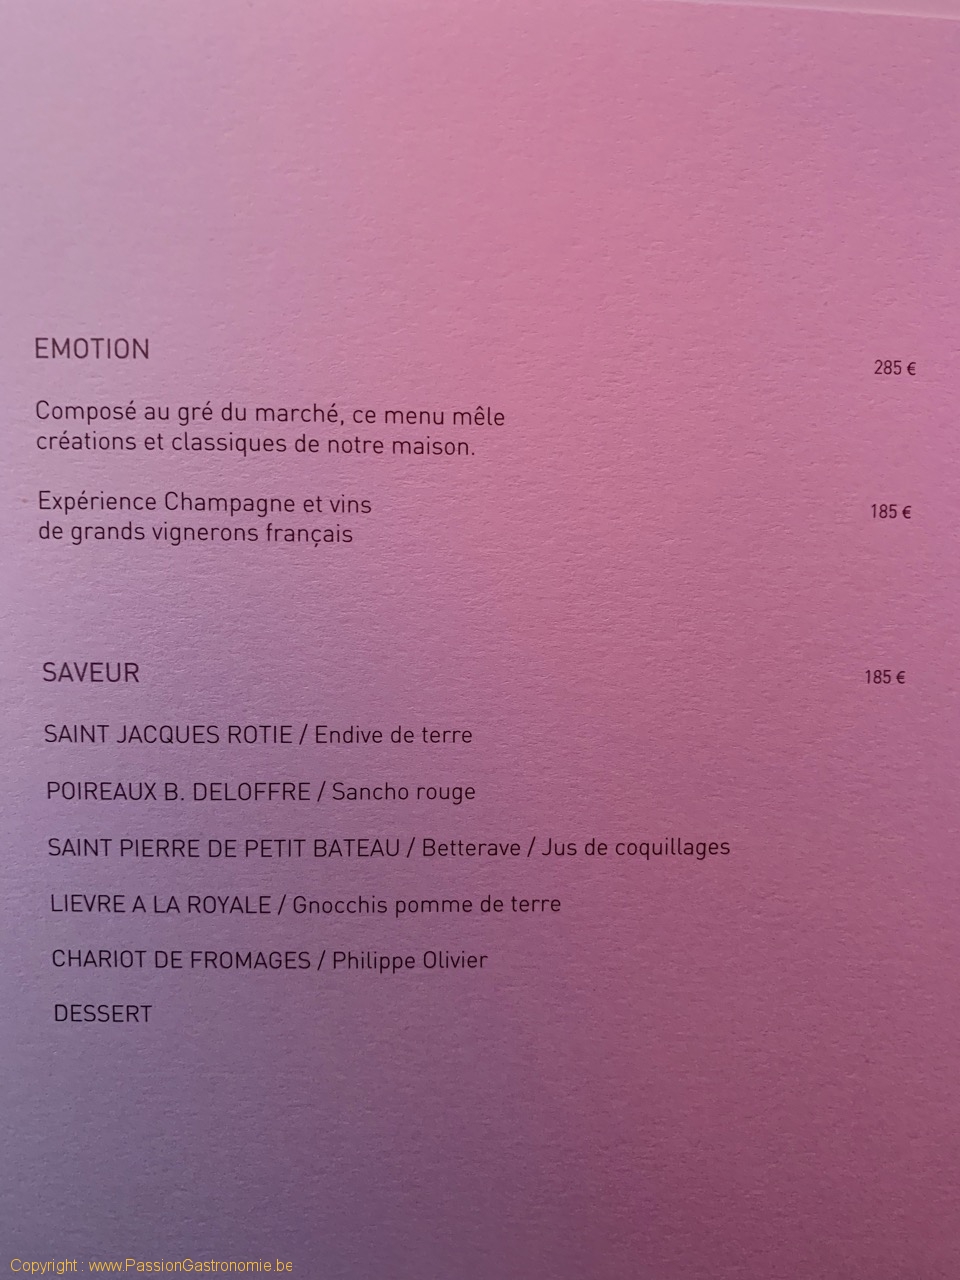 Restaurant L'Assiette Champenoise - Les menus du restaurant